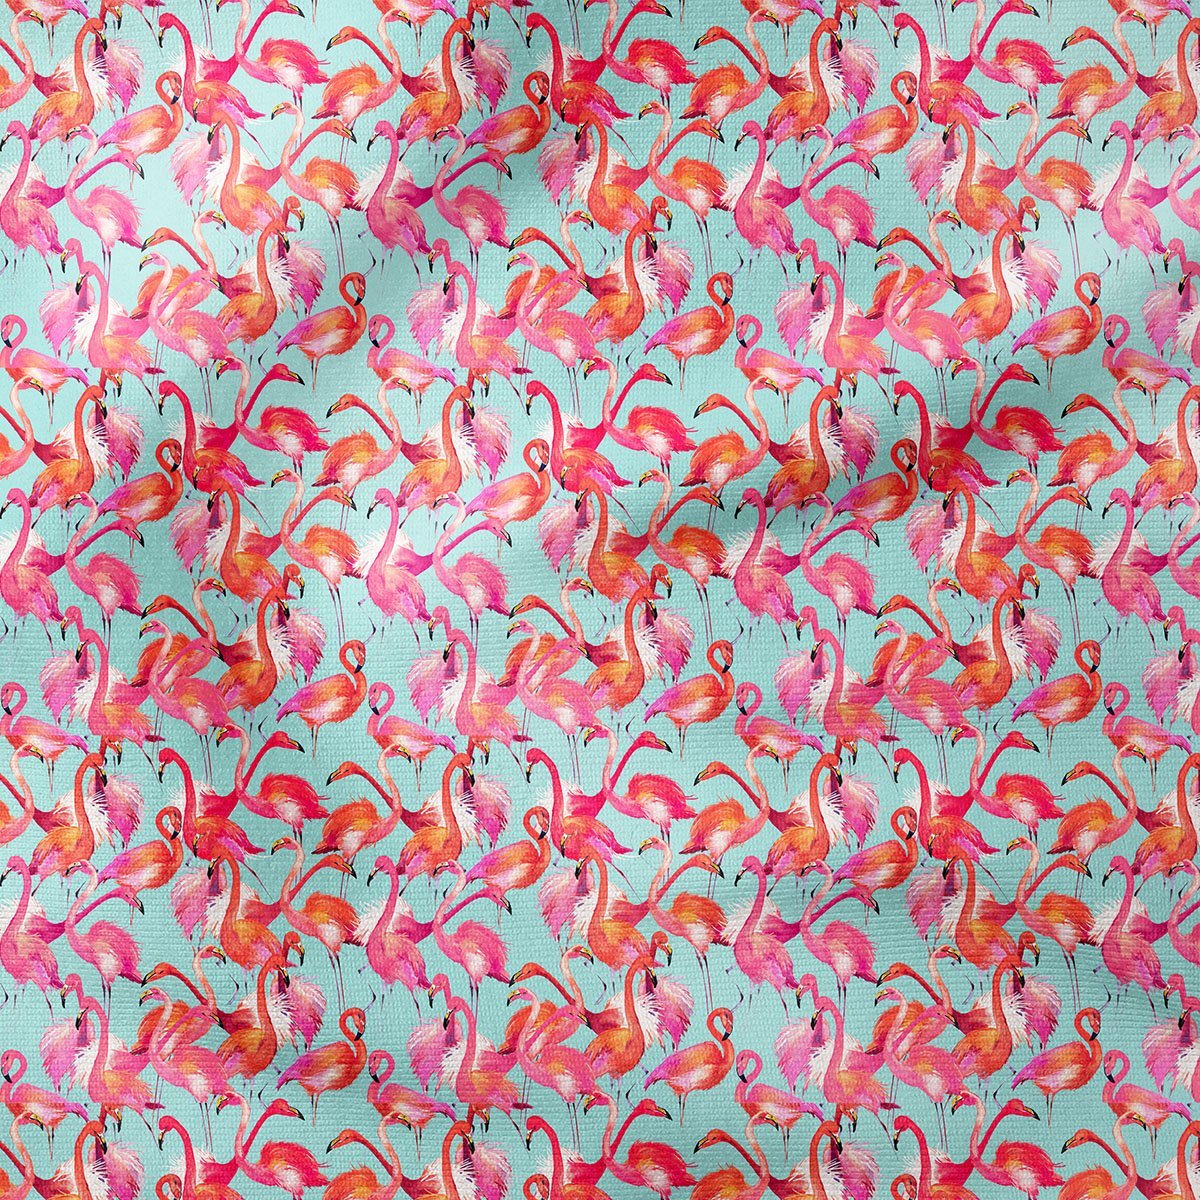 Tropikal Serisi-Suluboya Flamingo Desenli Kumaş